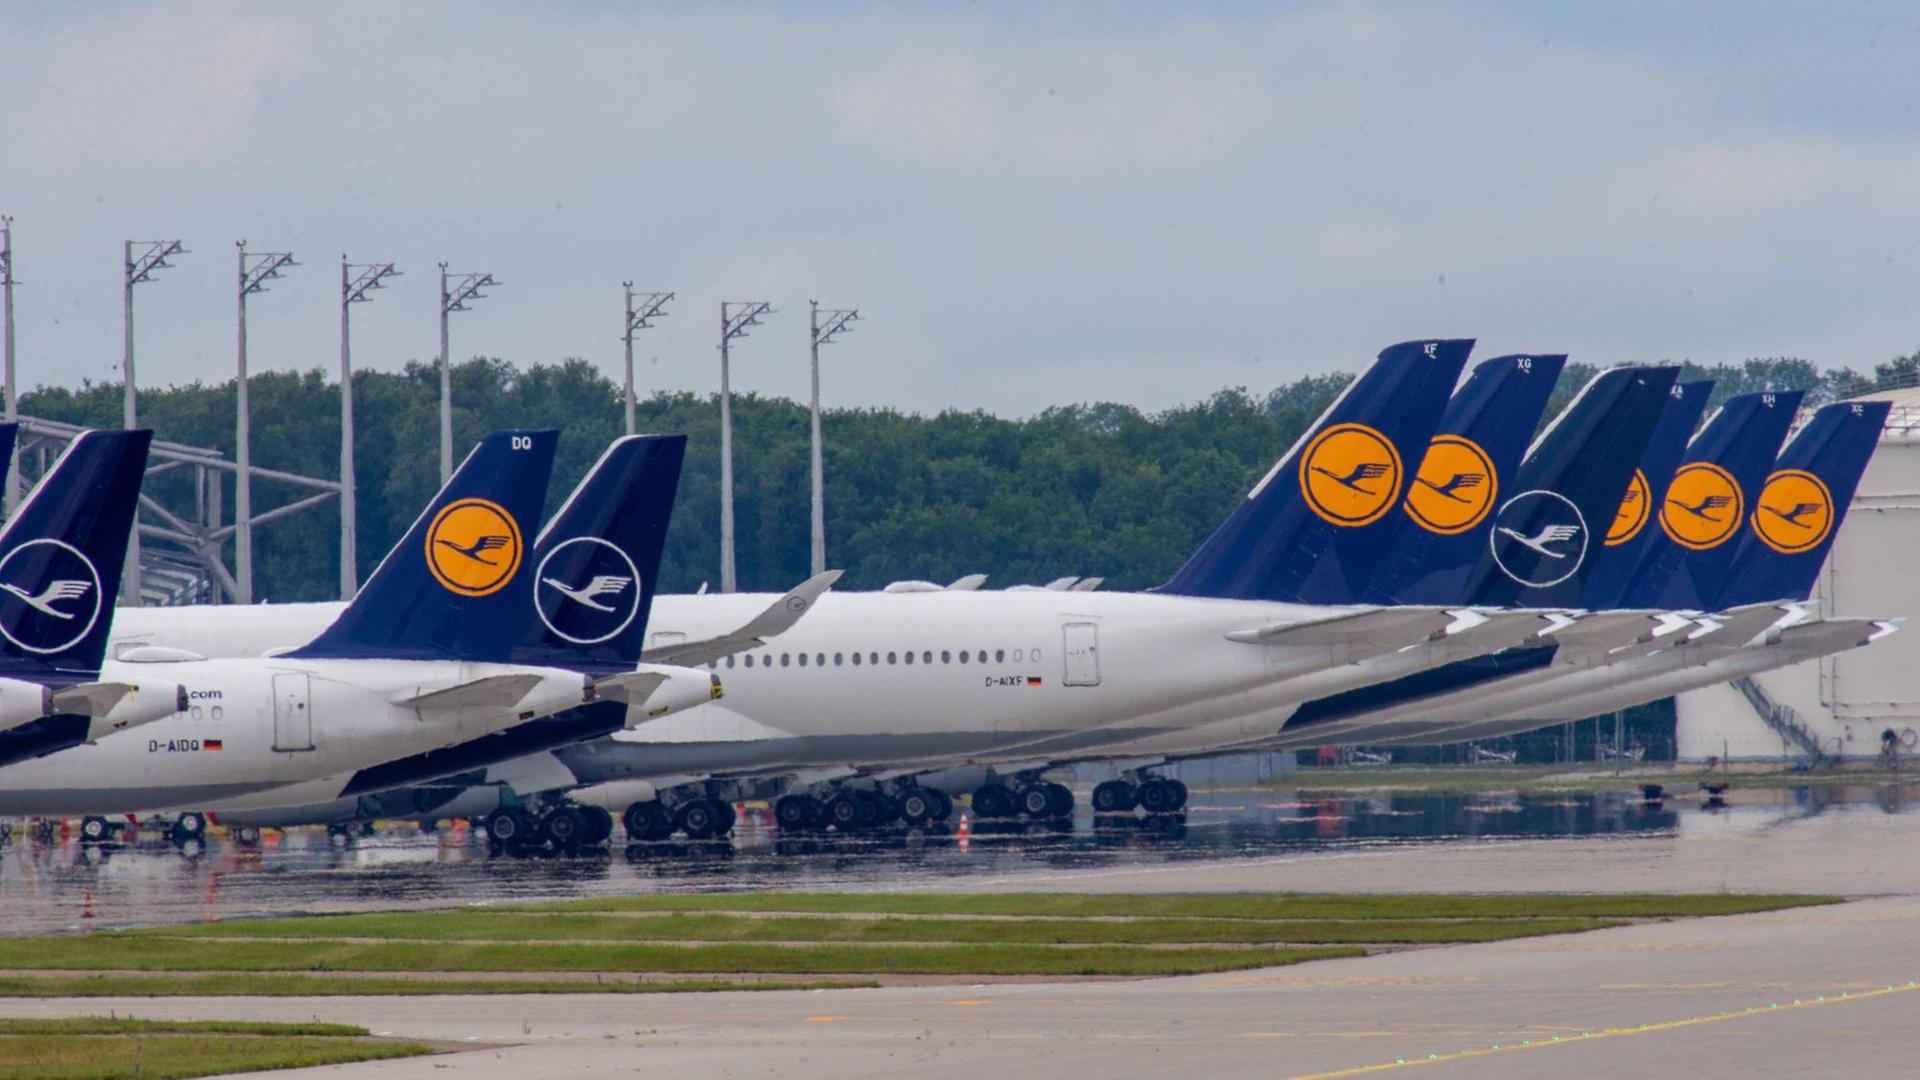 Flugzeuge der Lufthansa stehen am Flughafen in München am Boden. Bei der Airline sind nach der Coronakrise 22.000 Arbeitsplätze bedroht.